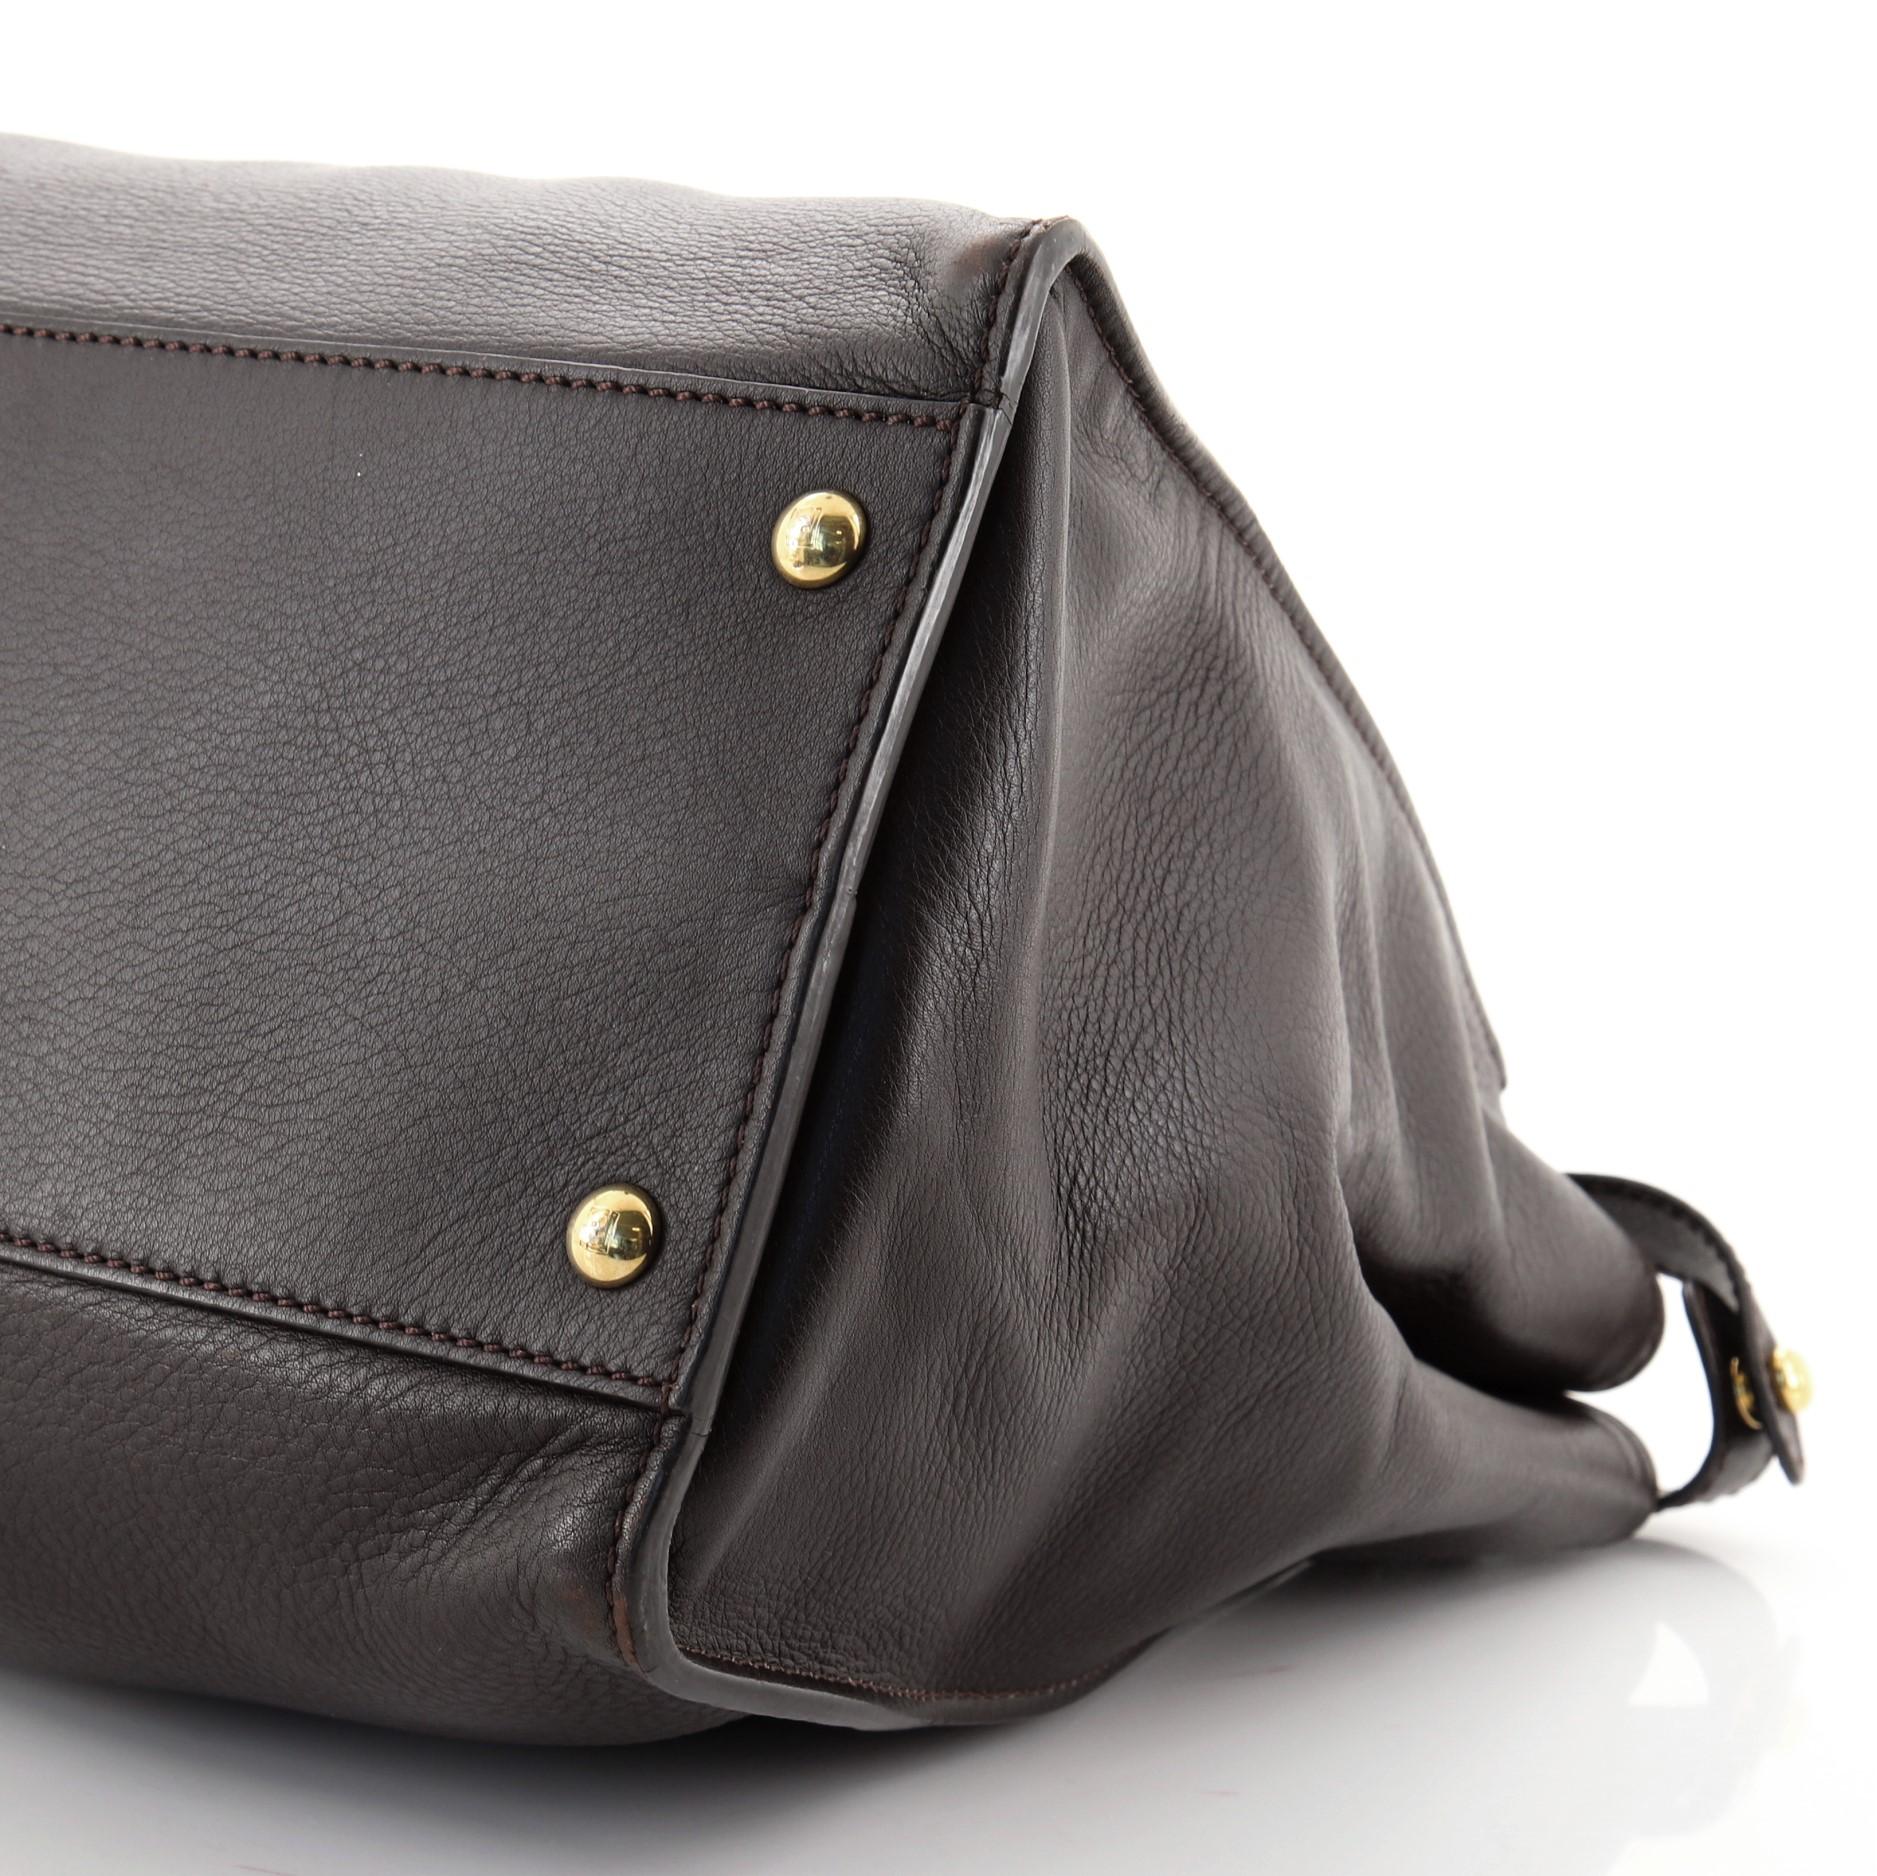 Black Fendi Peekaboo Bag Rigid Leather Large